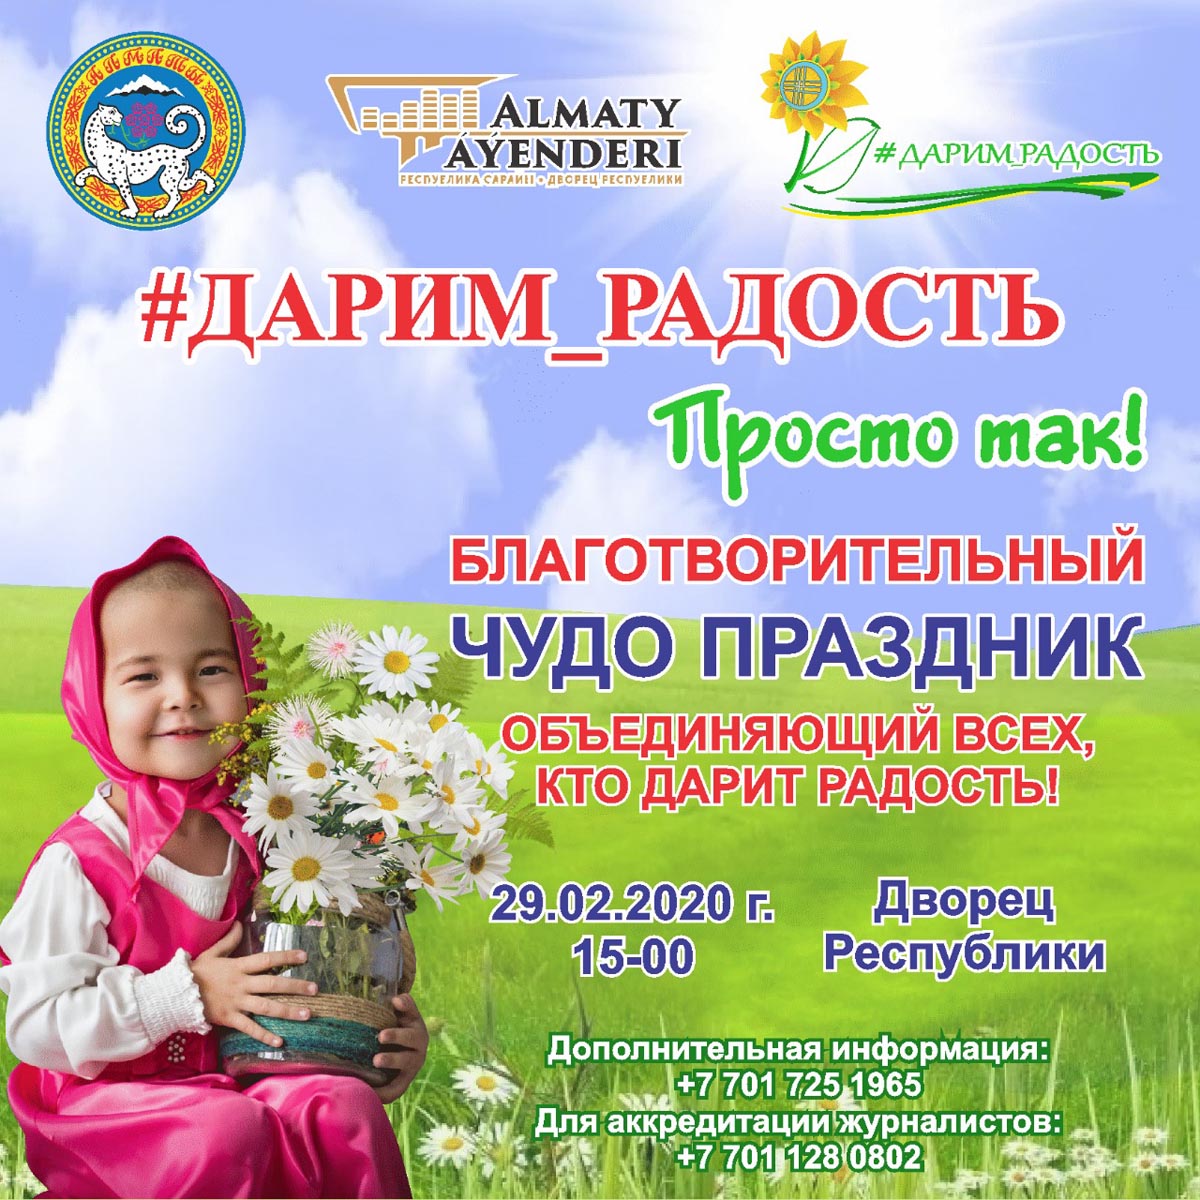 Концерт в поддержку онкобольных детей состоится в Алматы